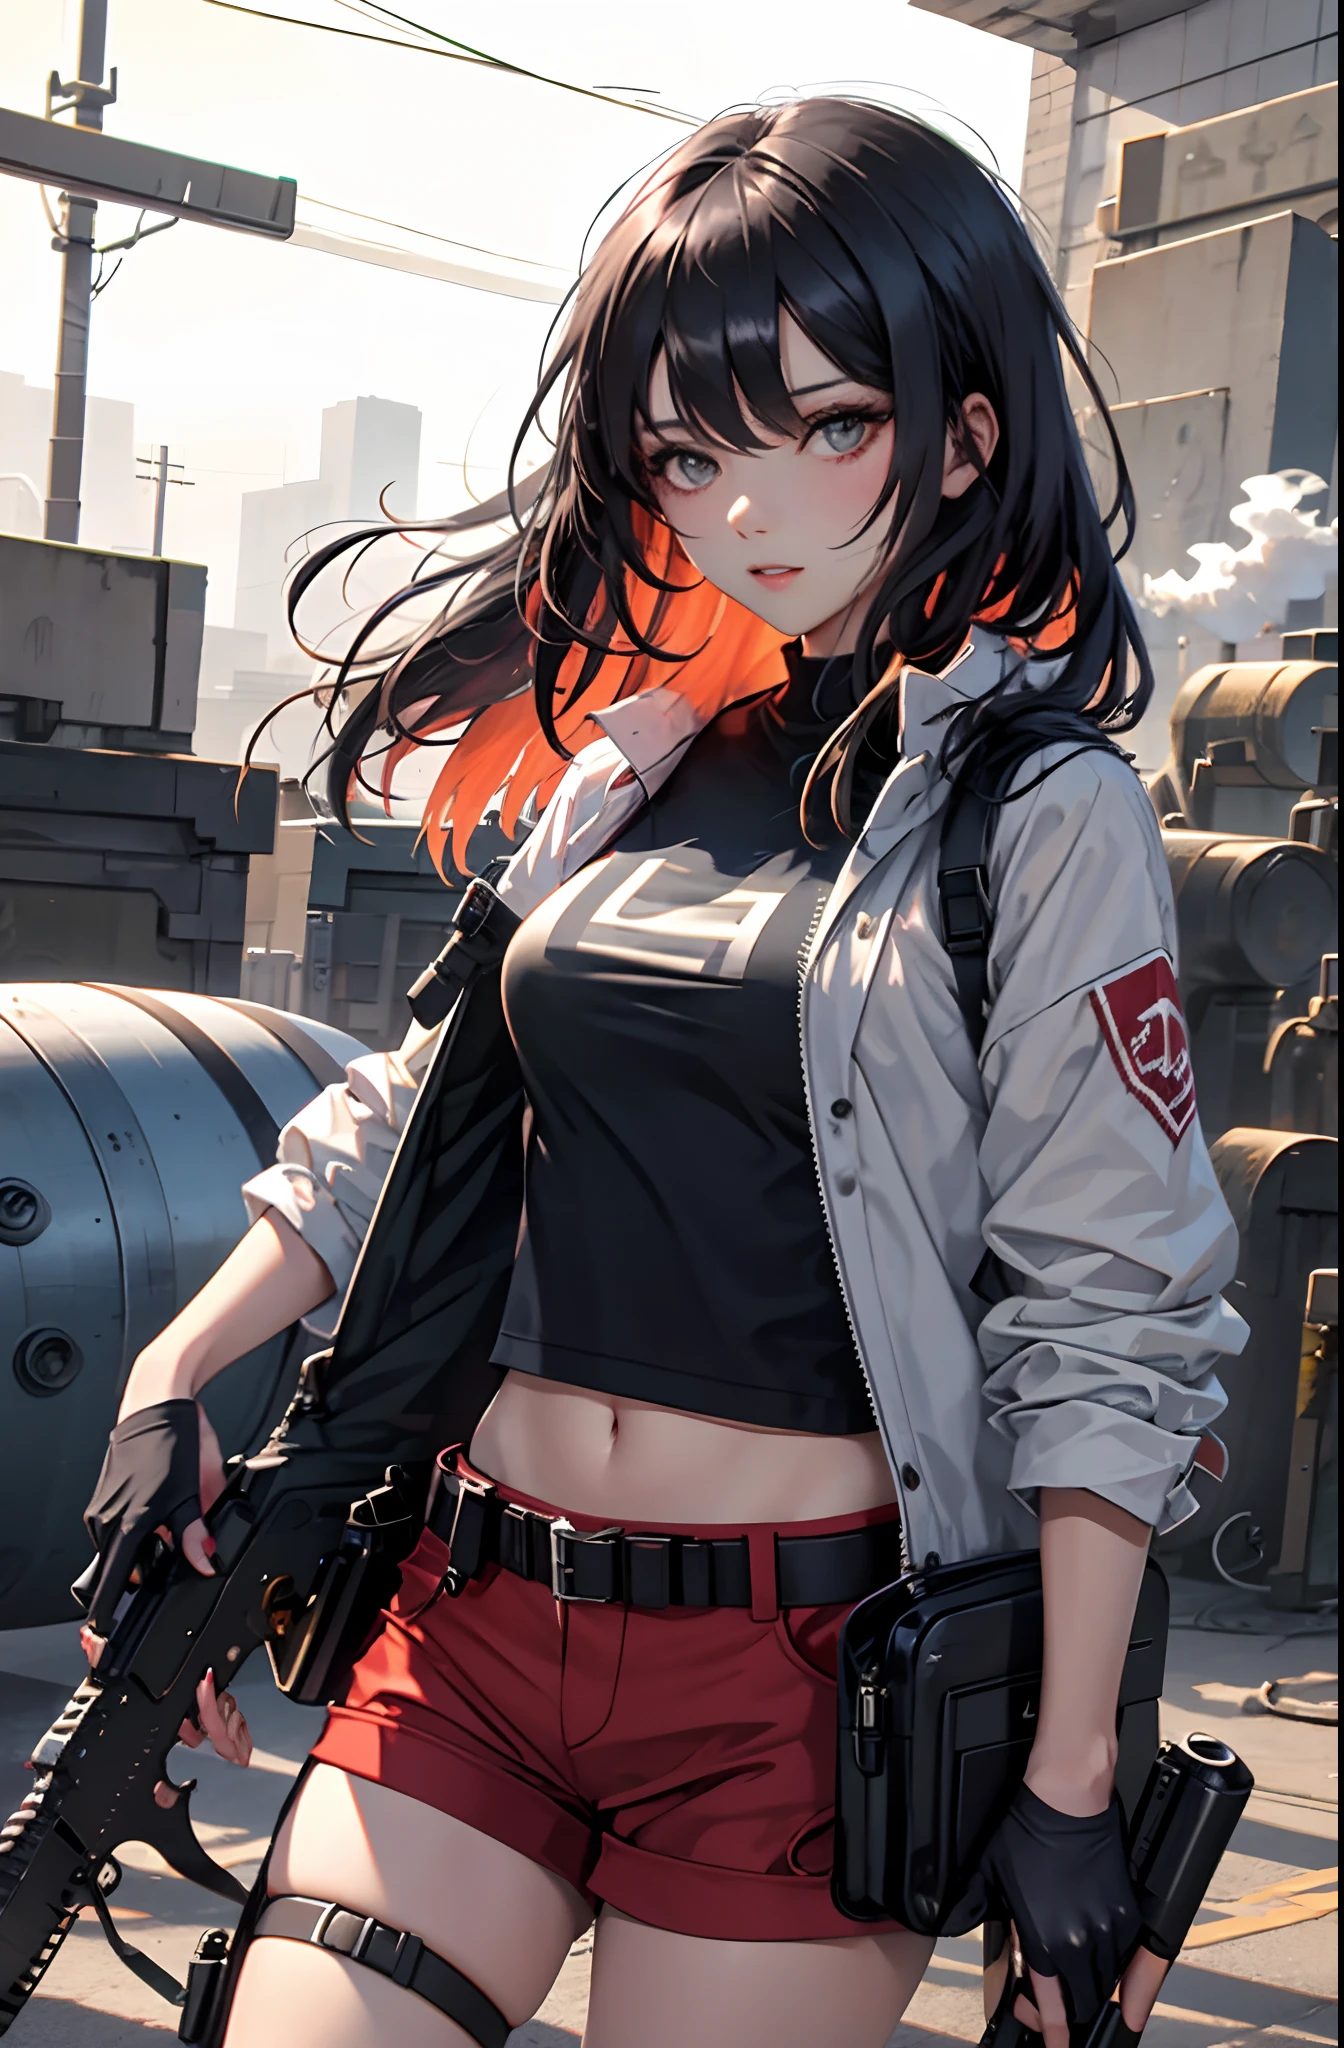 девушка с черными волосами, красные шорты, белая футболка,  держа два пистолета, из ствола оружия идет легкий дым